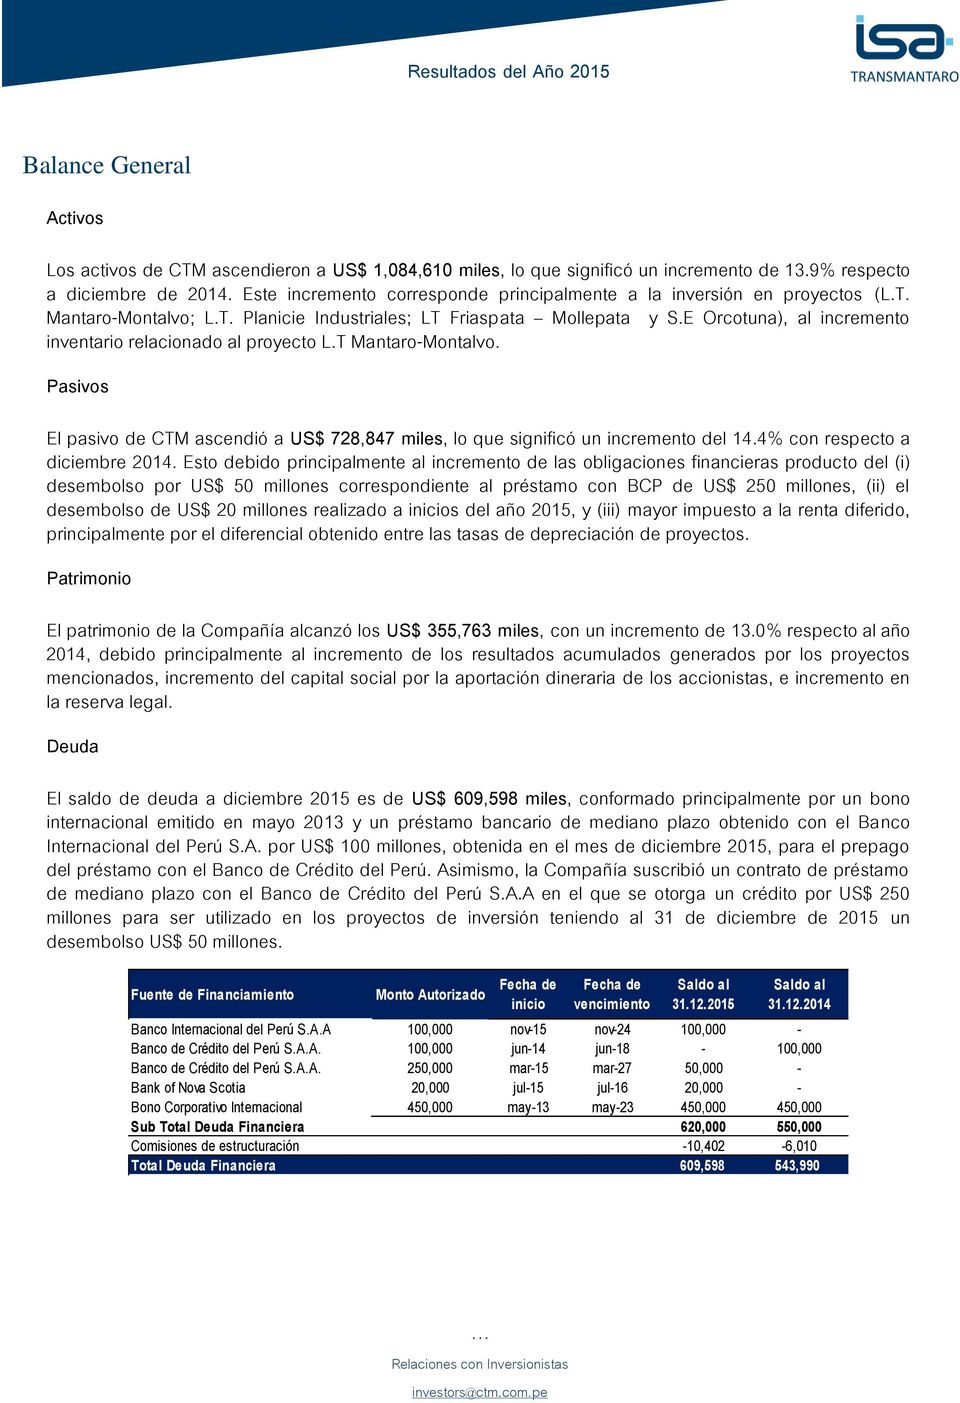 E Orcotuna), al incremento inventario relacionado al proyecto L.T Mantaro-Montalvo. Pasivos El pasivo de CTM ascendió a US$ 728,847 miles, lo que significó un incremento del 14.